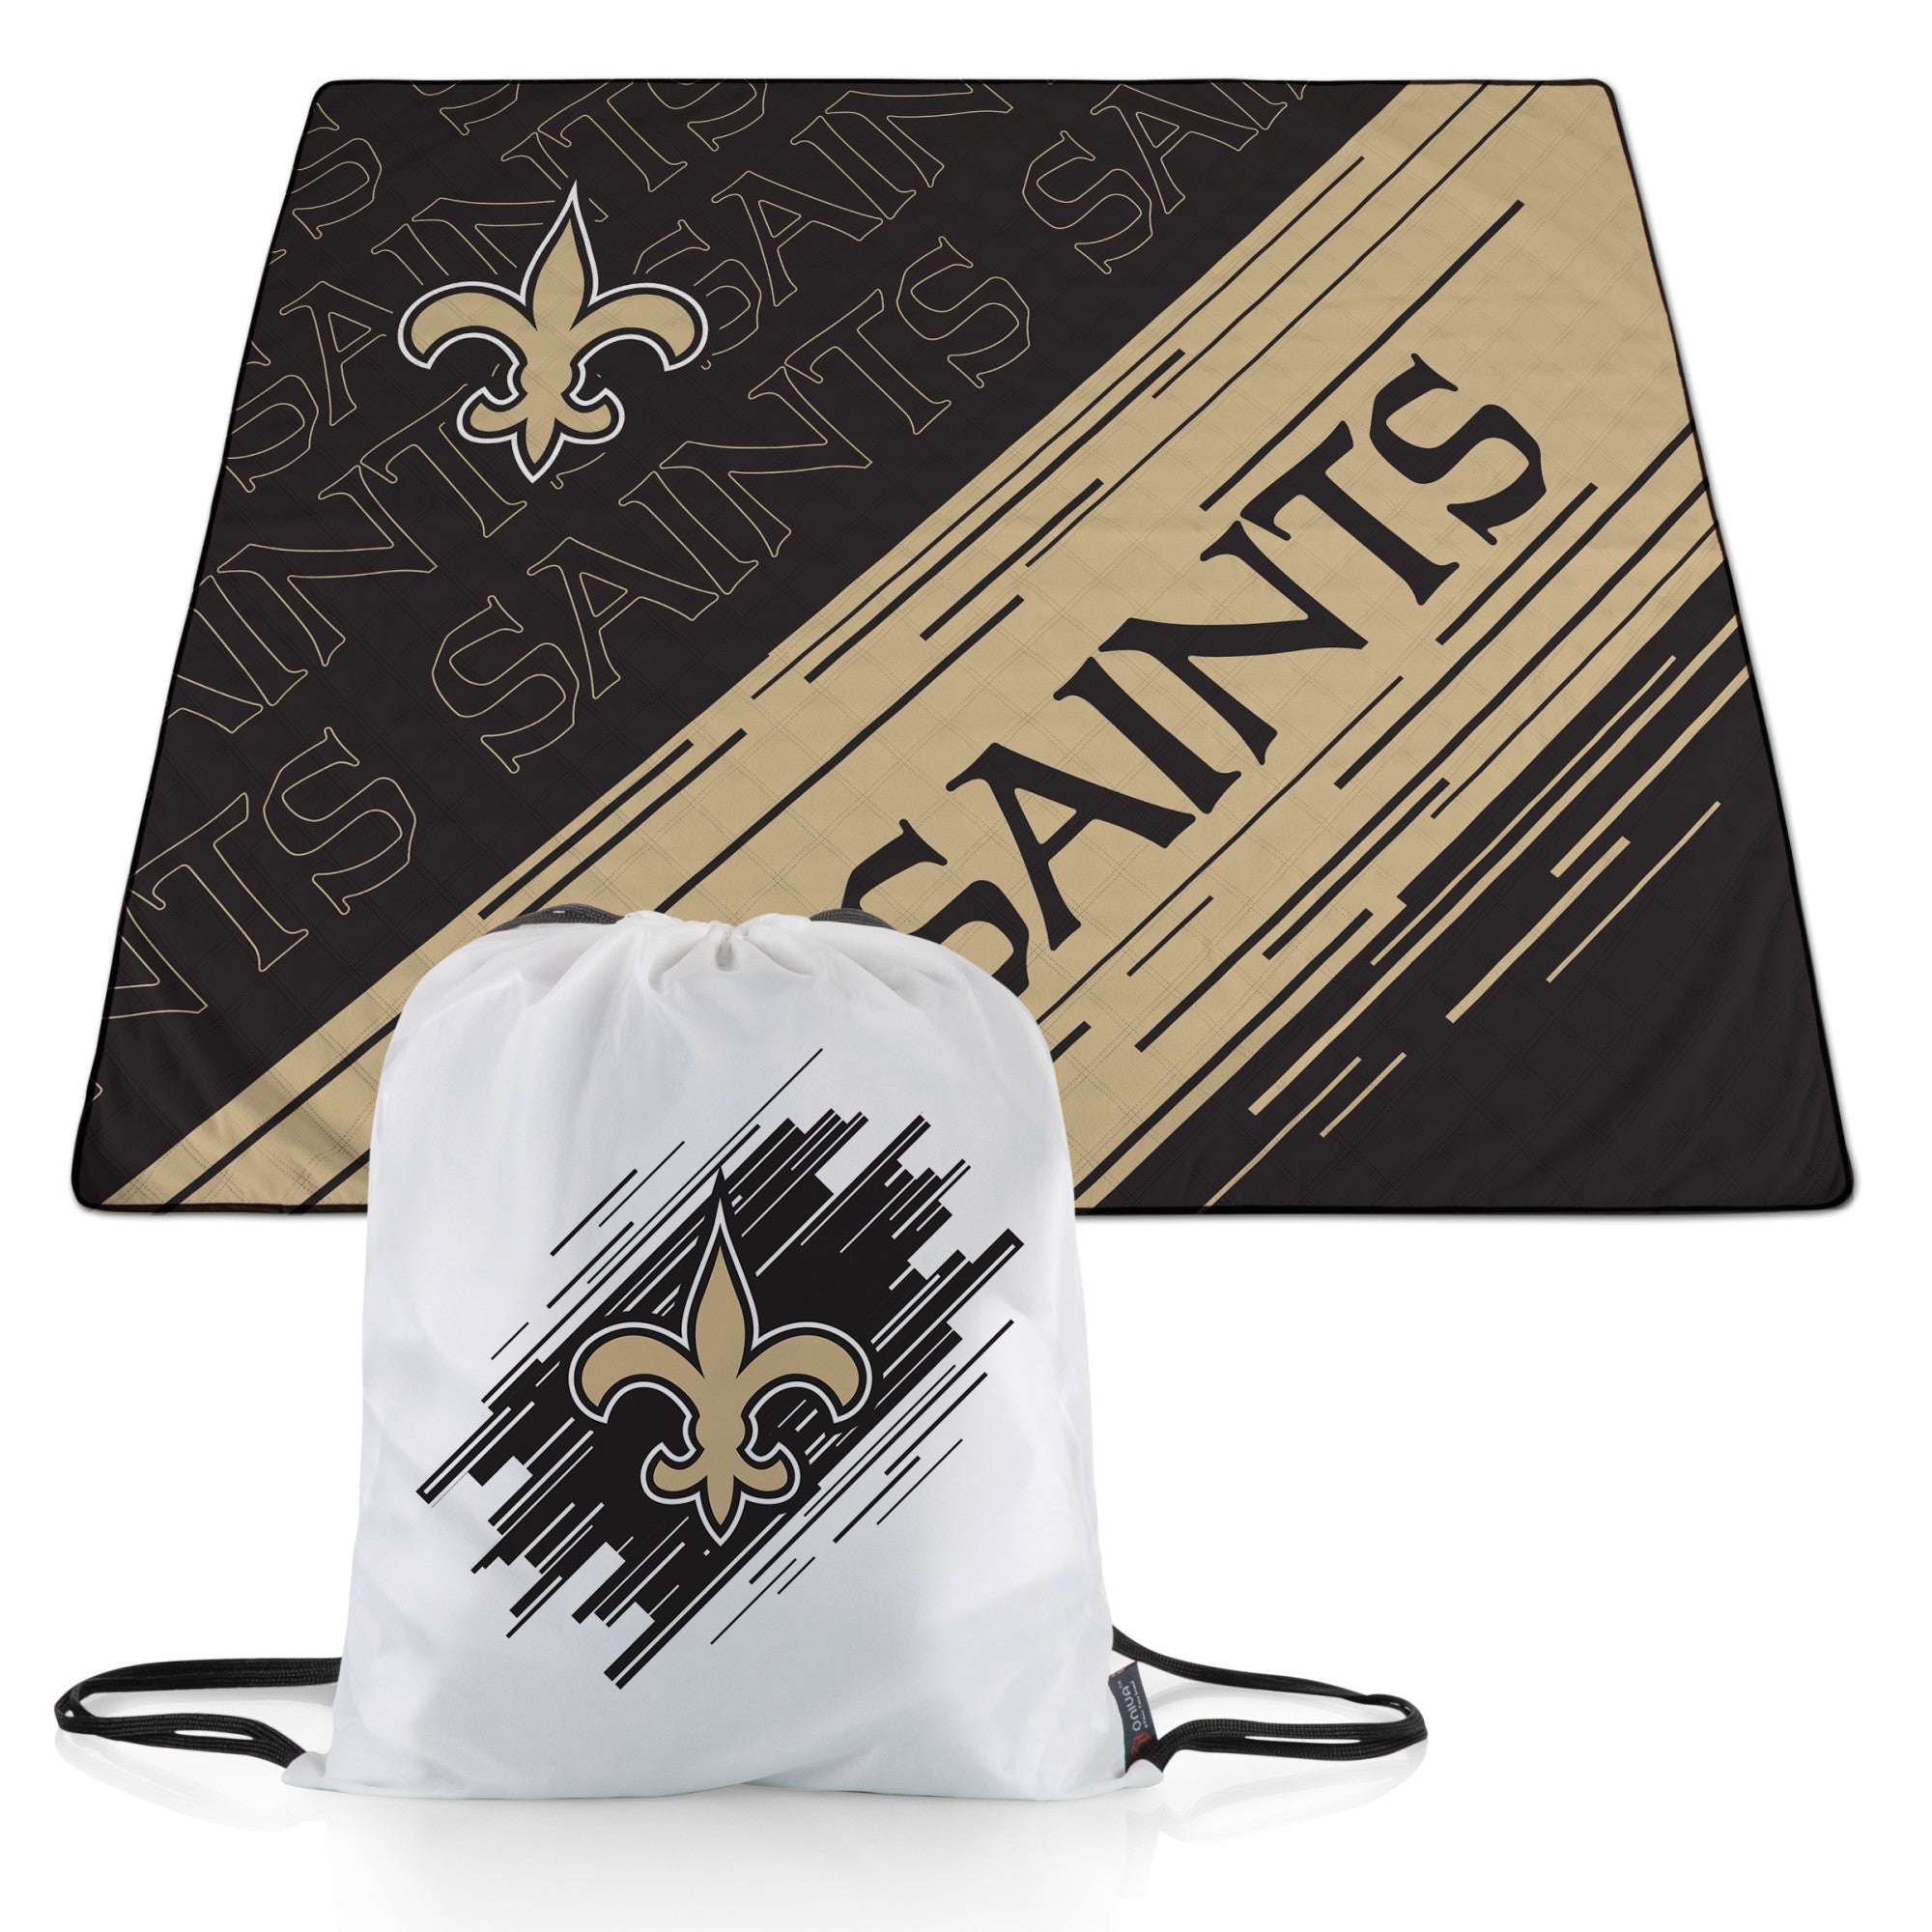 New Orleans Saints NFL Logo Love Cinch Purse